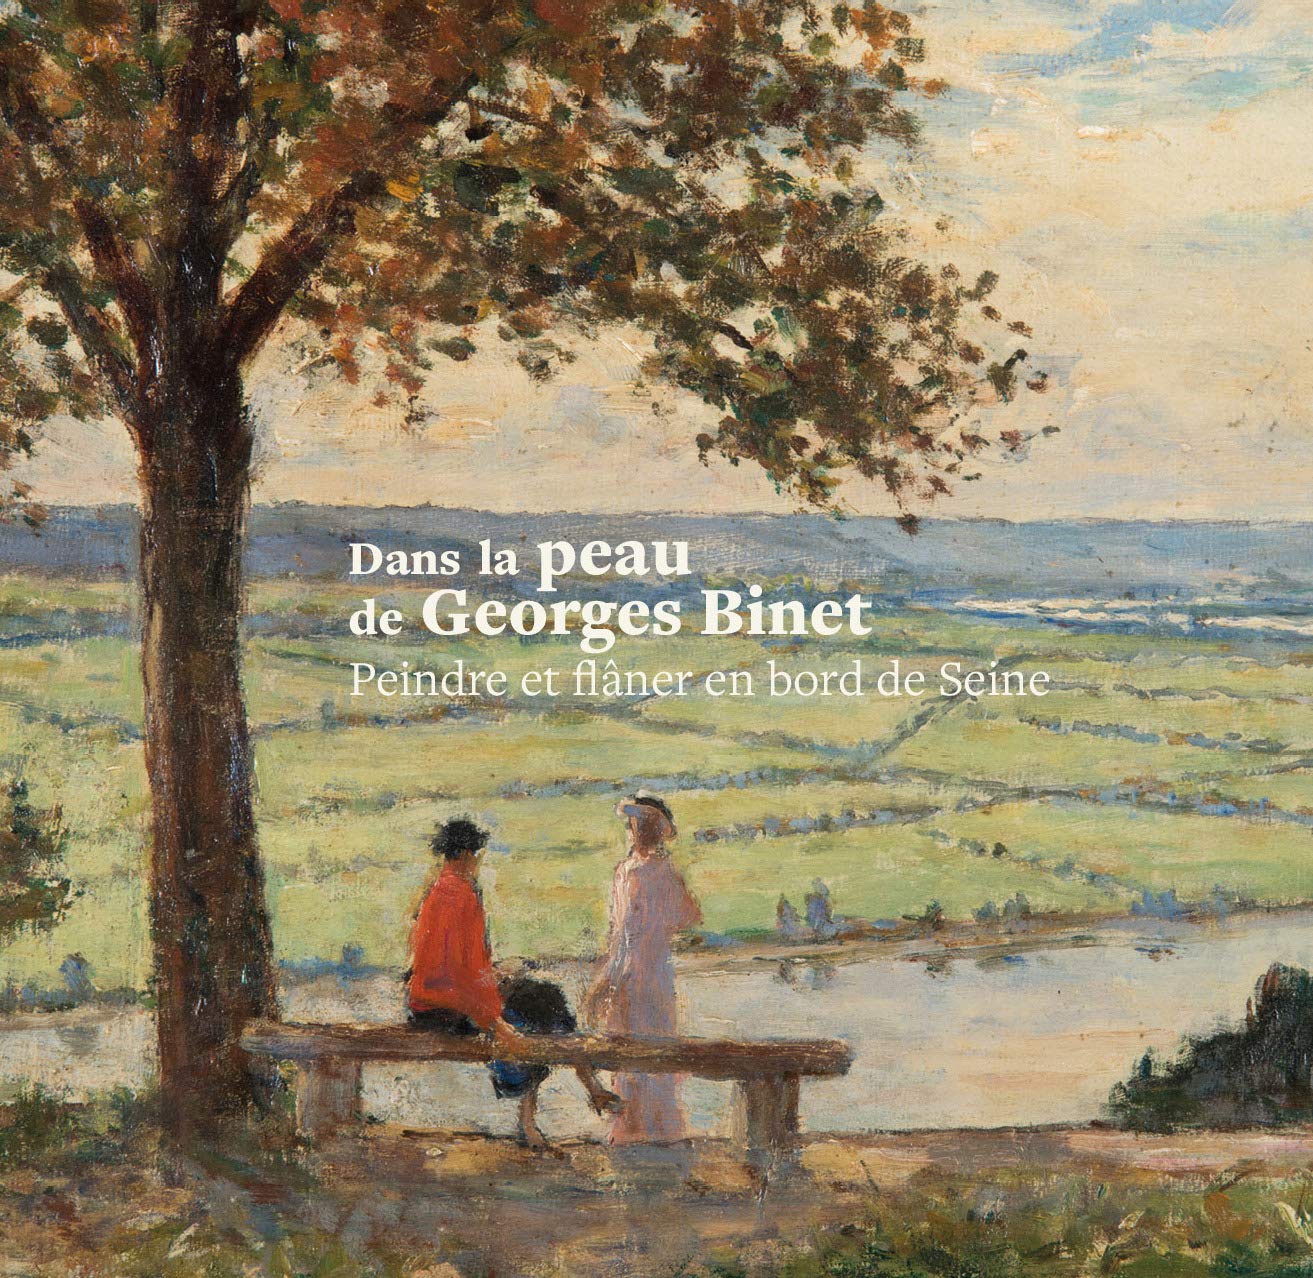 Dans la peau de Georges Binet, peindre et flâner en bord de Seine